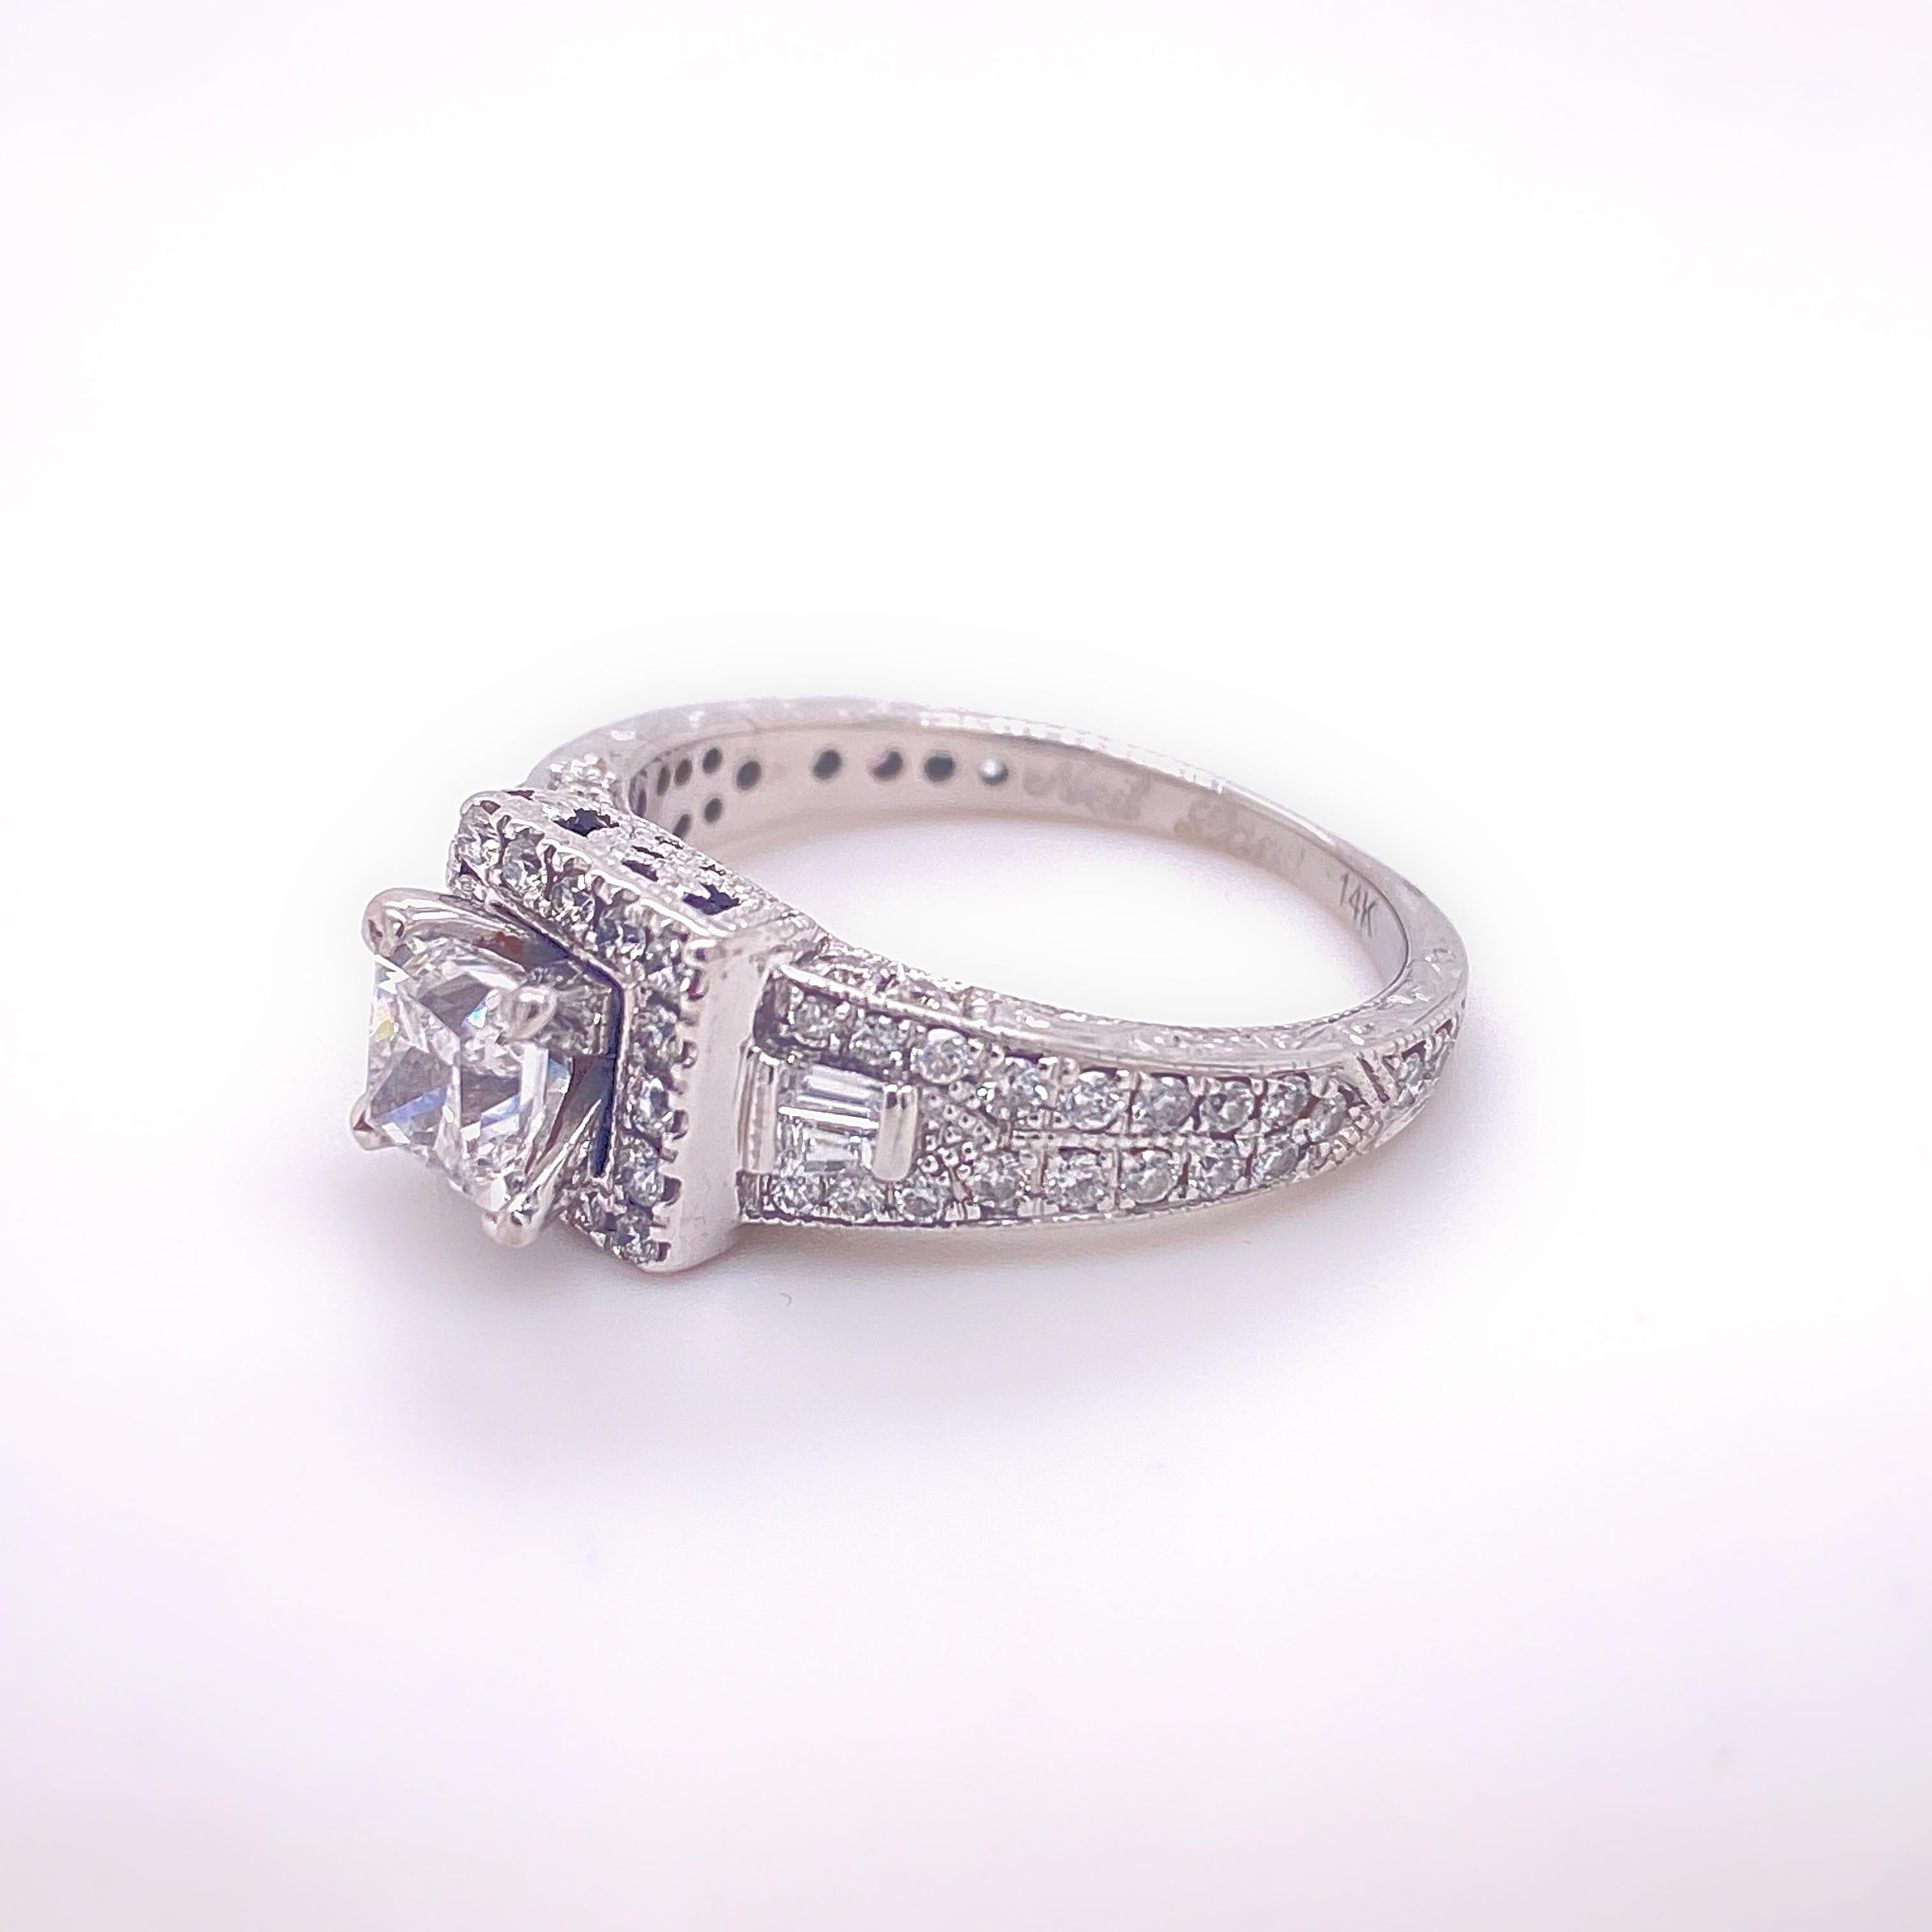 Princess Cut Neil Lane Princess Diamond 1.50 Carat Engagement Ring in 14 Karat White Gold For Sale